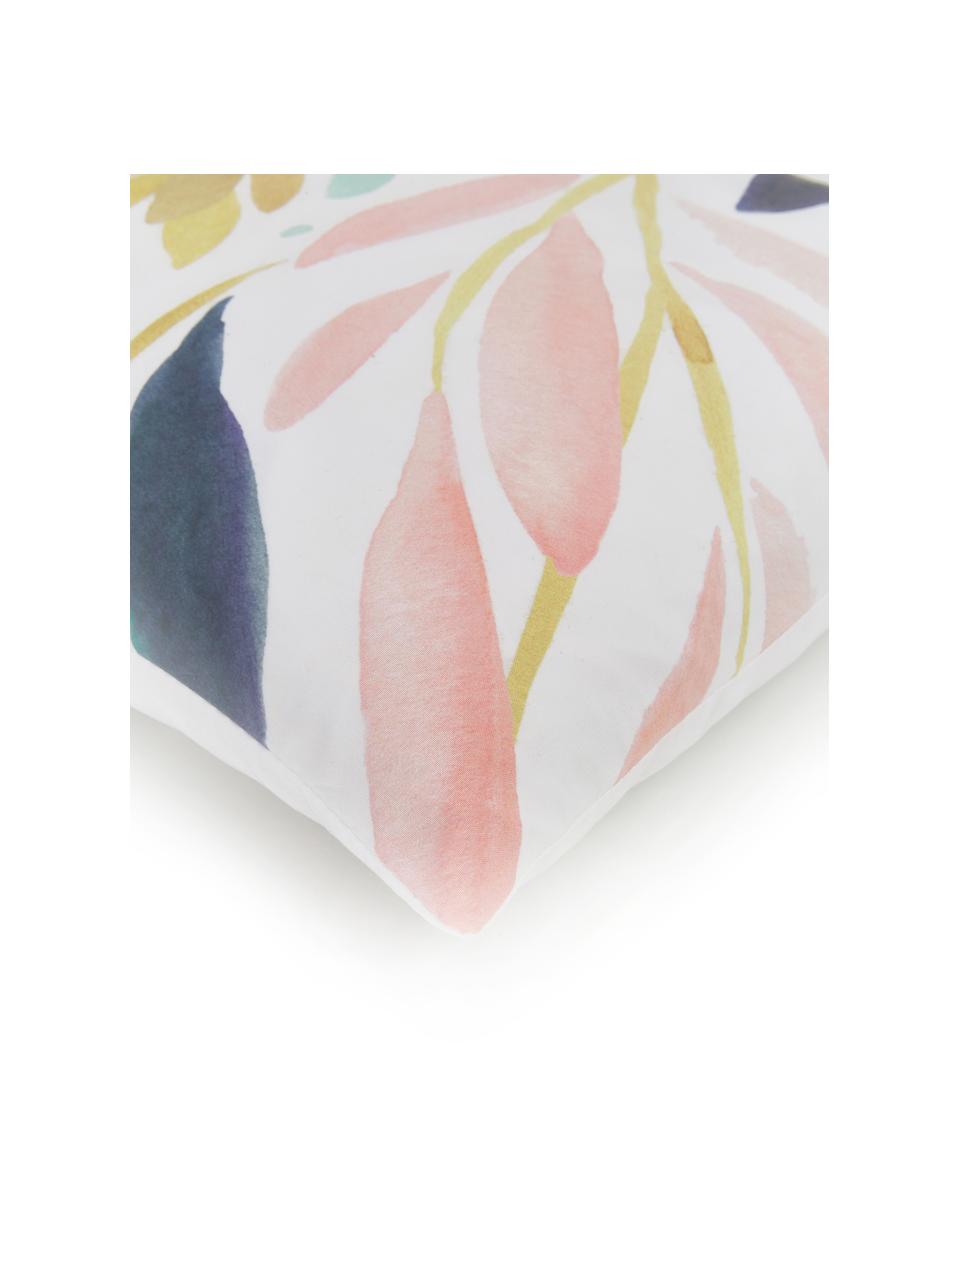 Kissenhülle Agia mit Aquarell Print, 100% Polyester, Weiß, Dunkelblau, Hellblau, Rosa, Senfgelb, 40 x 40 cm